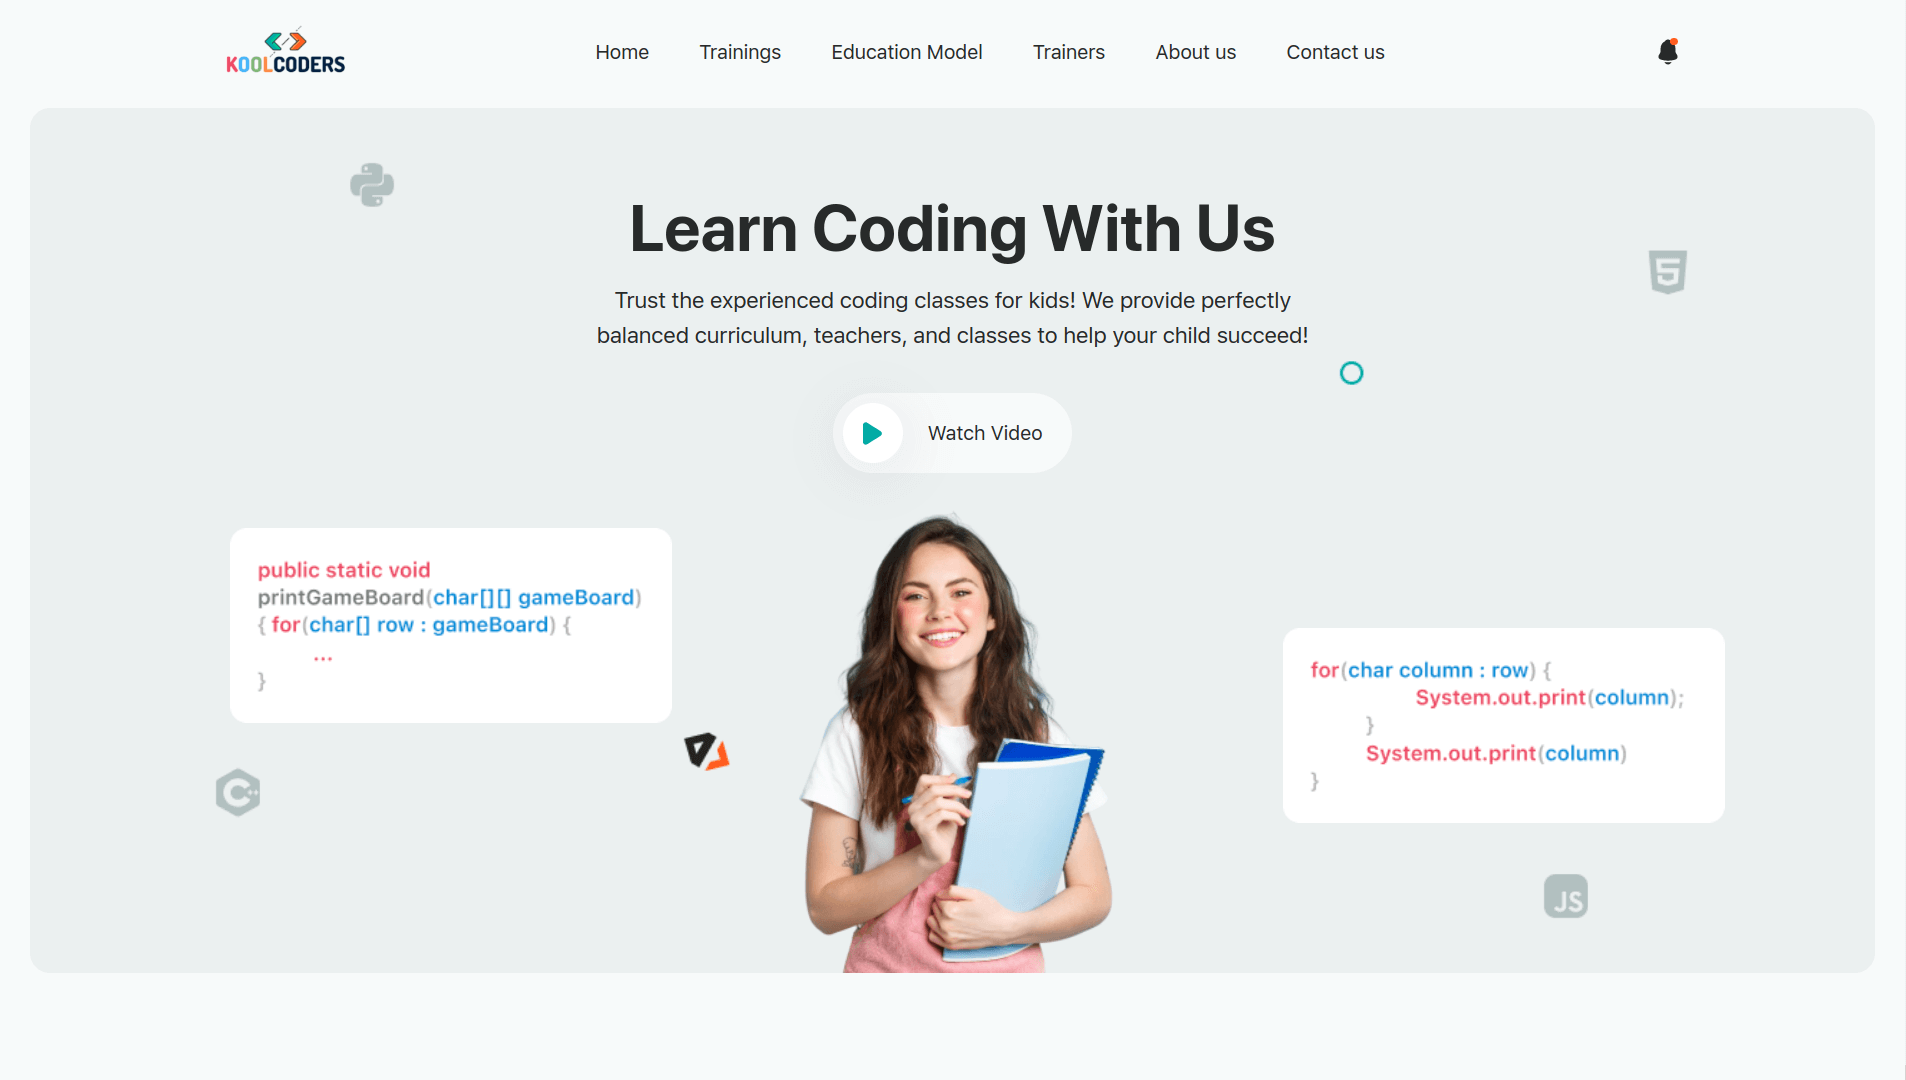 Kool coders